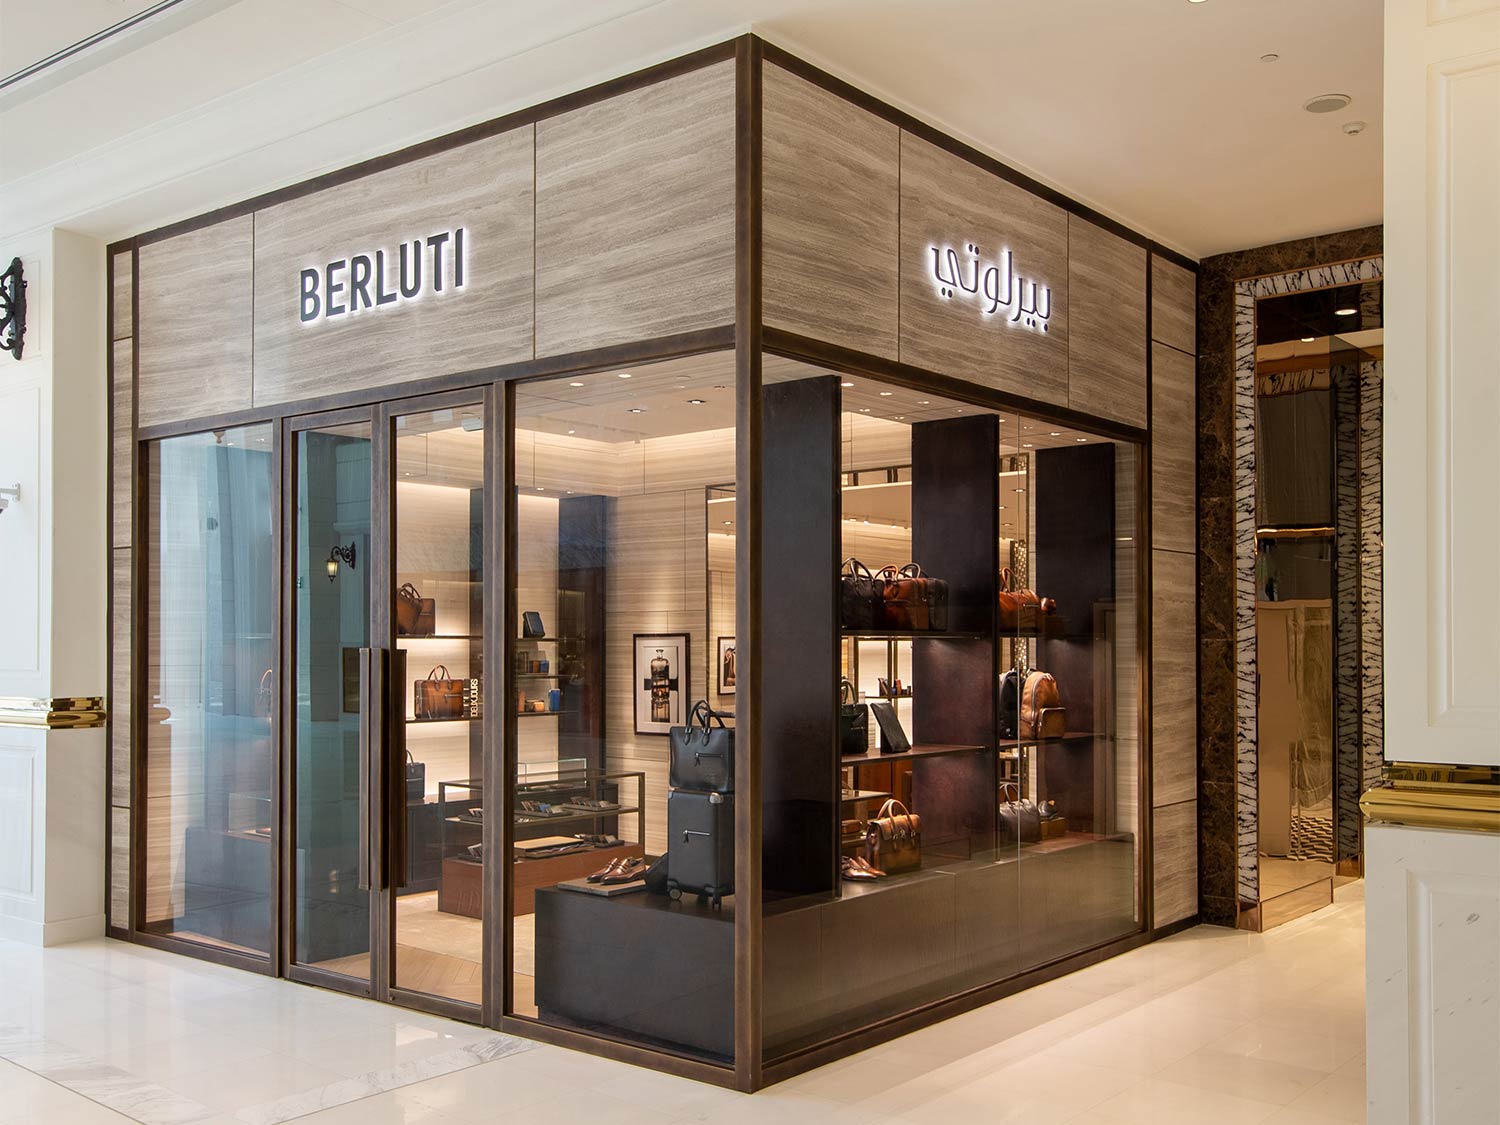 Ali Bin Ali Fashion opens Berluti store in Qatar